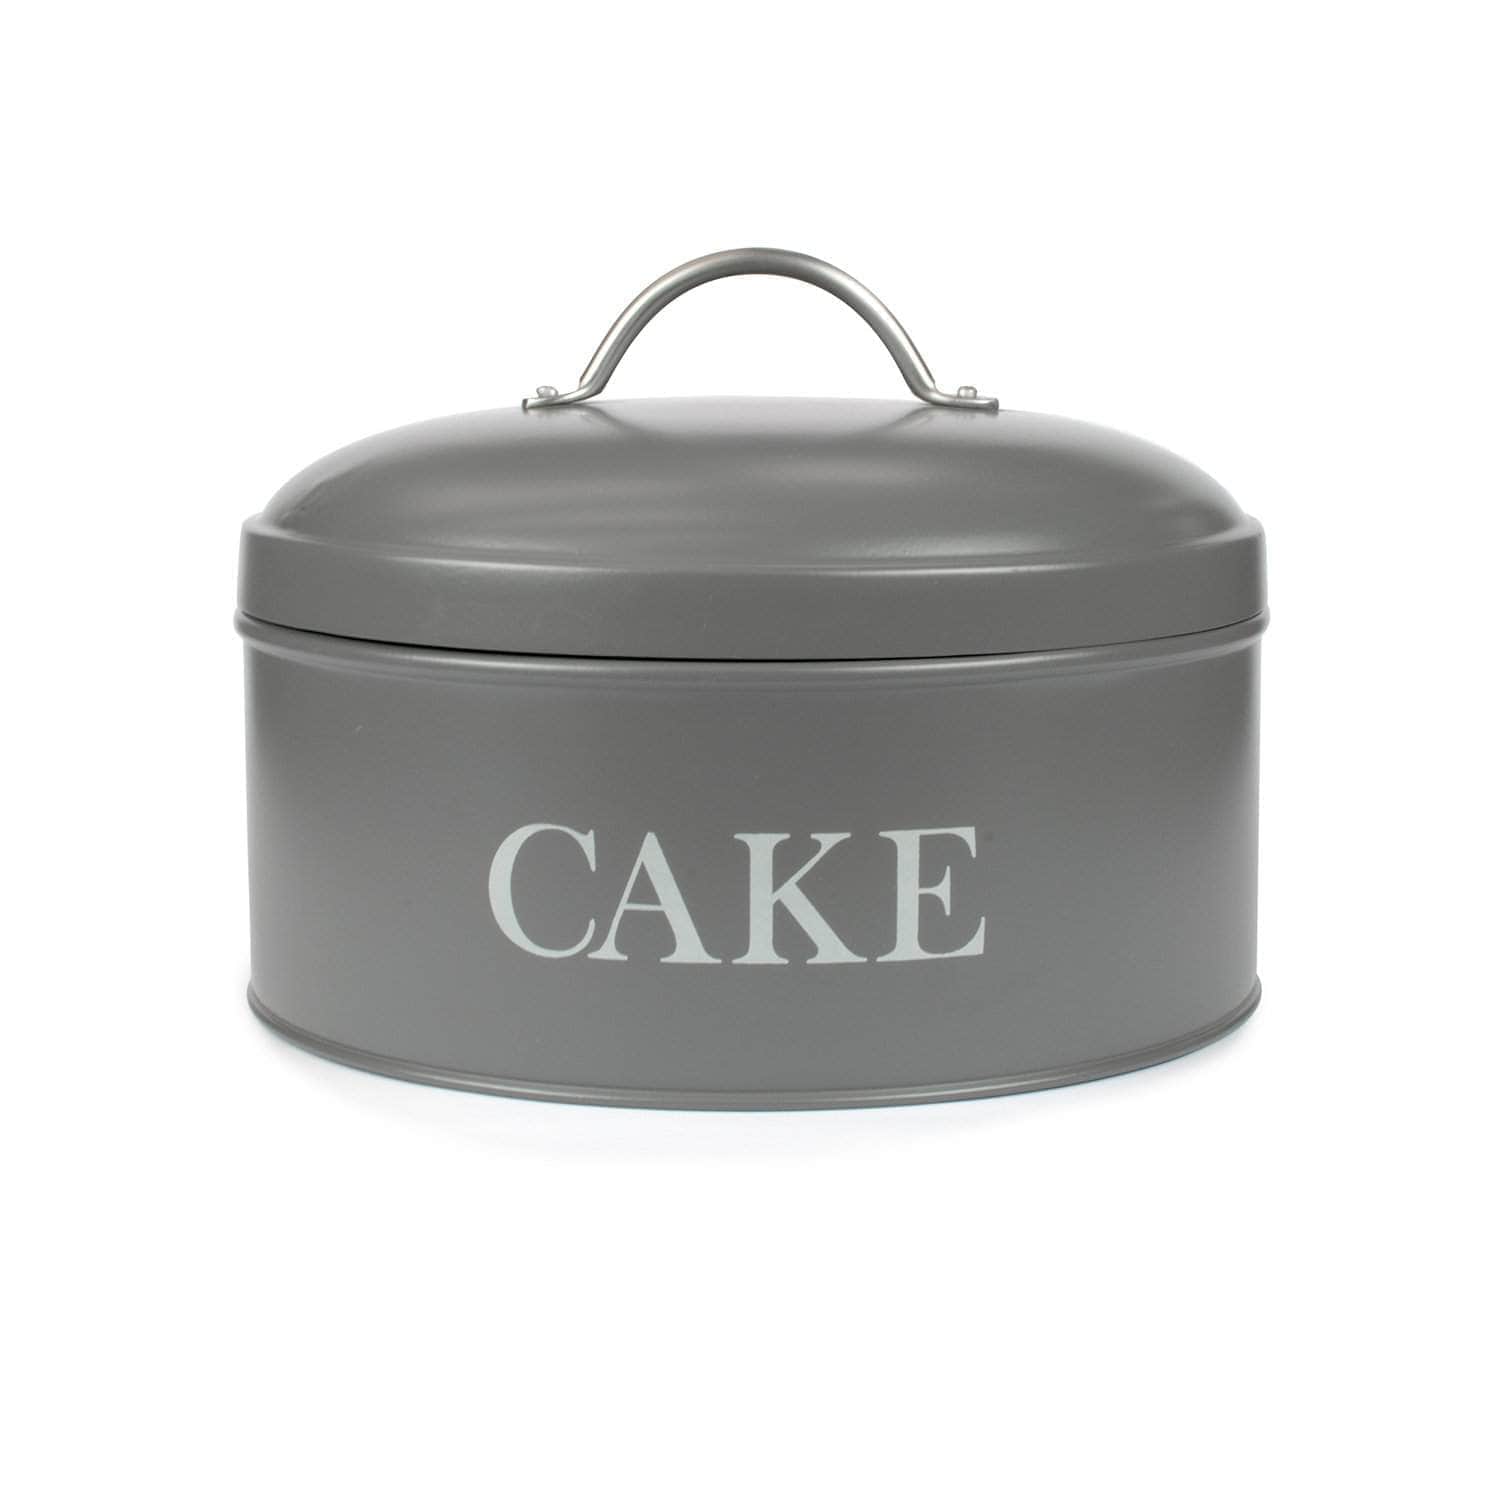 Cake tin in charcoal grey